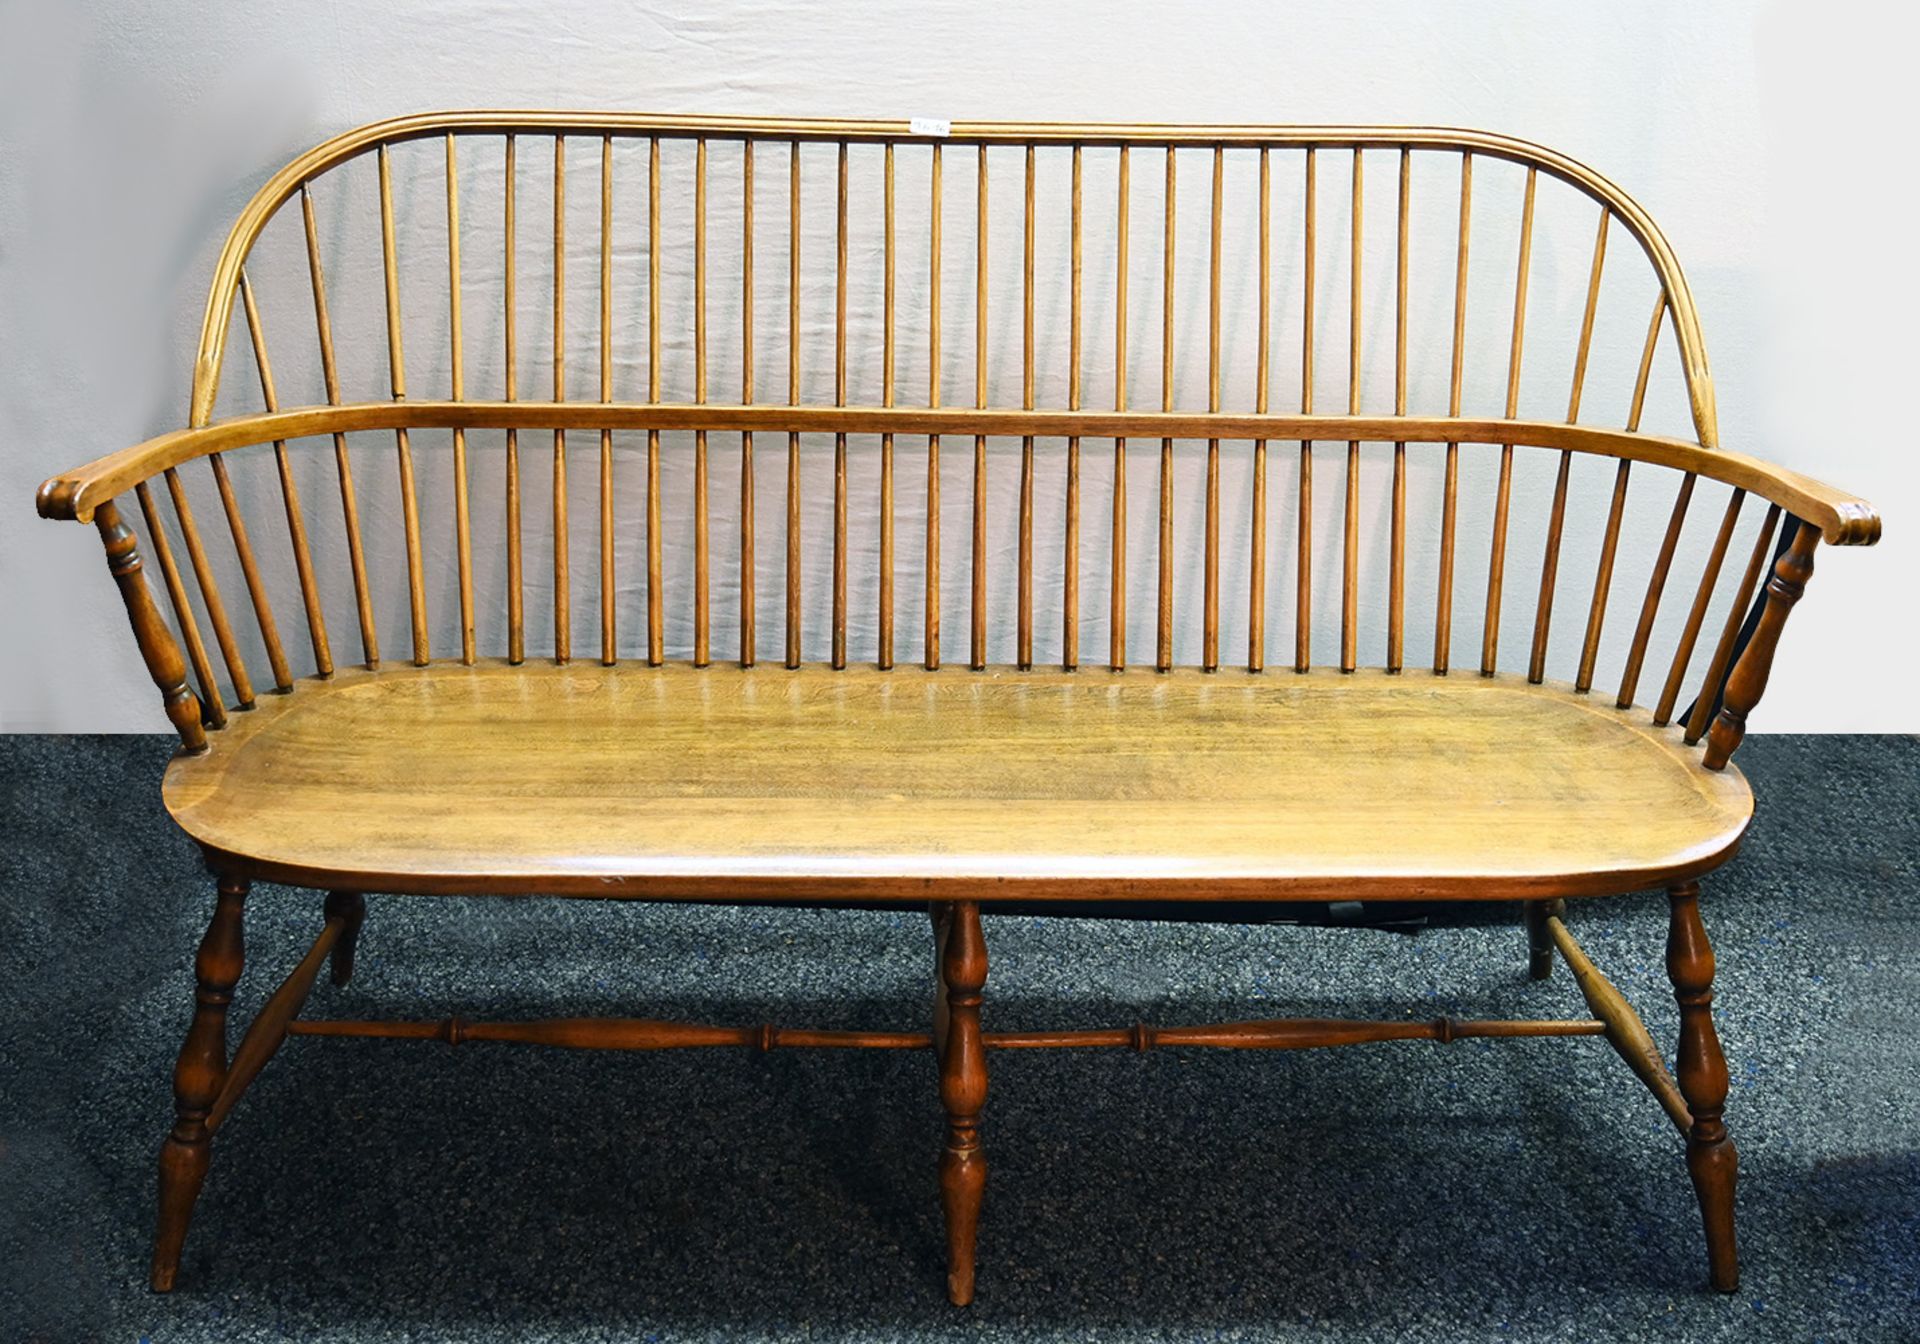 5 Stühle/1 Sitzbank im Windsor-Stil, davon 2 Armlehnstühle H. PANDER & ZONEN, Dänemark Modellnr. P 5 - Image 3 of 3